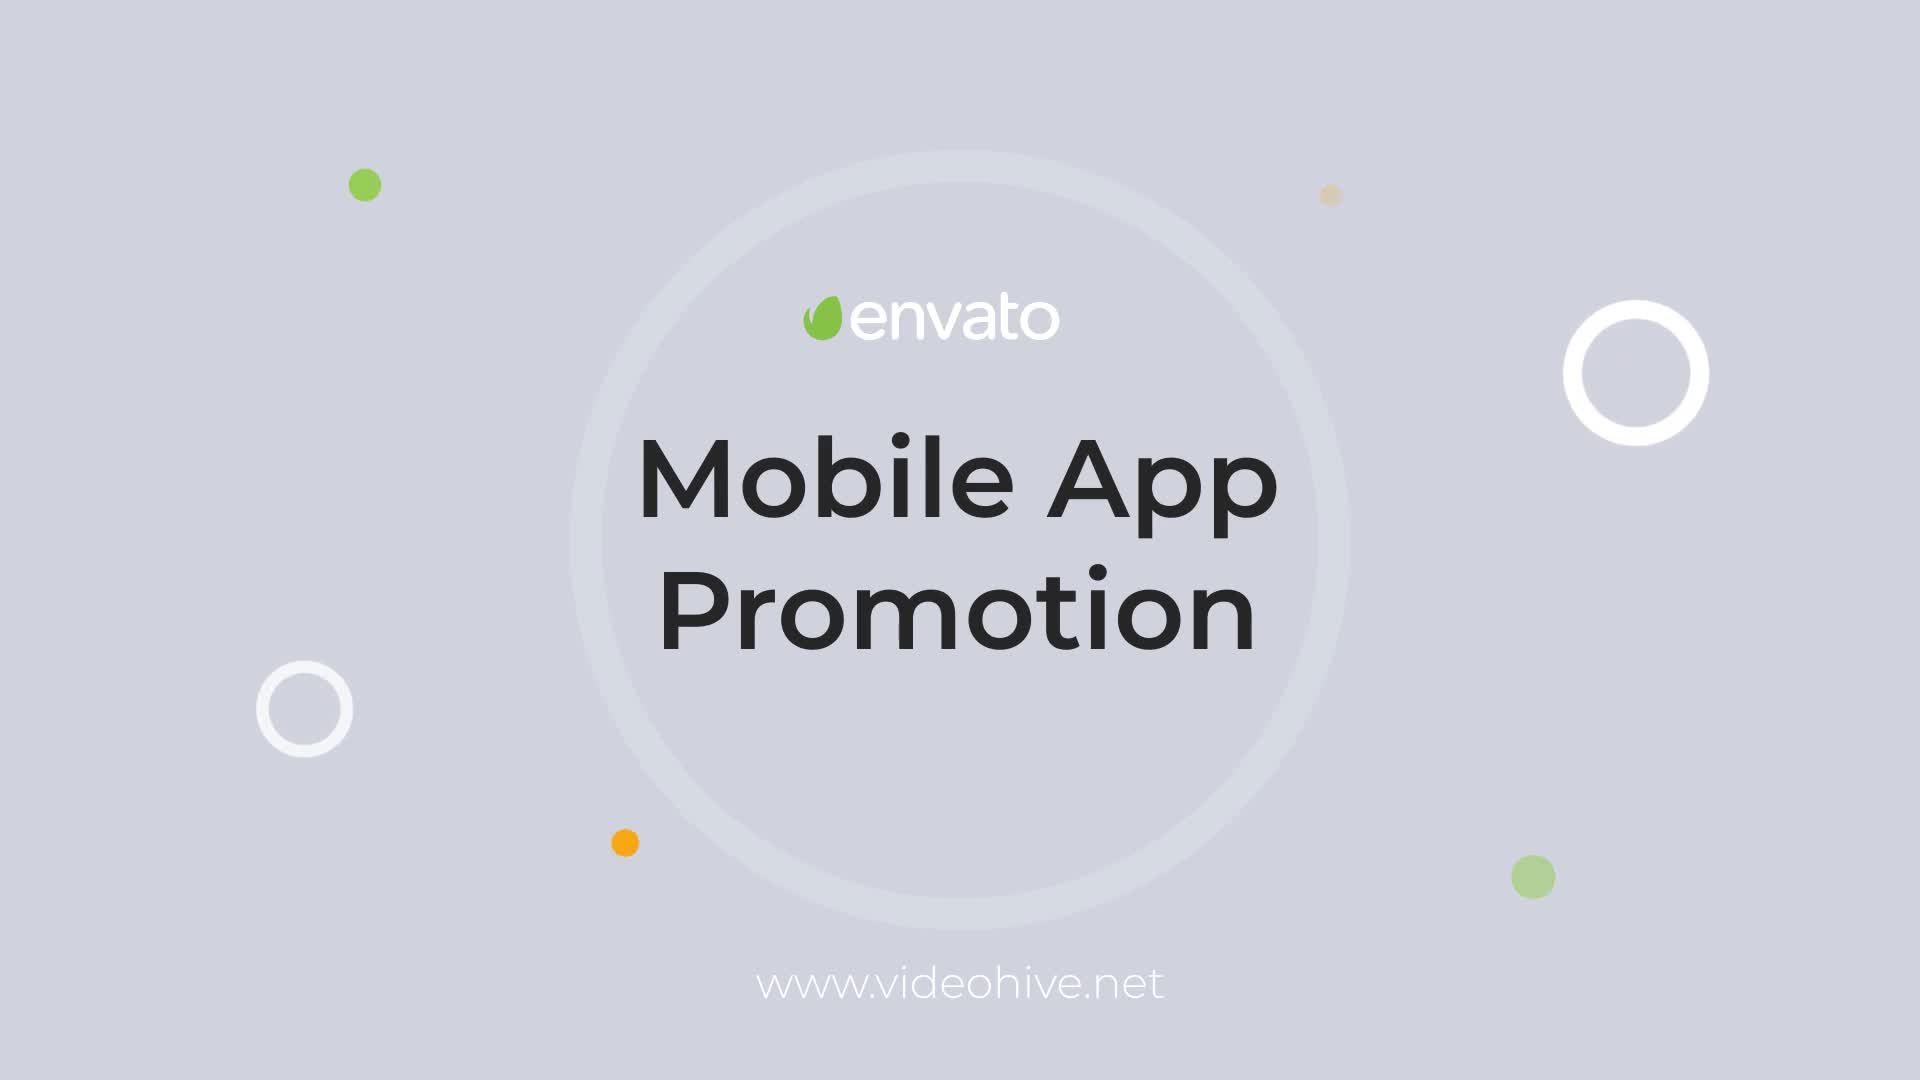 Mobile App Promo Mogrt 99 Videohive 33323377 Premiere Pro Image 1